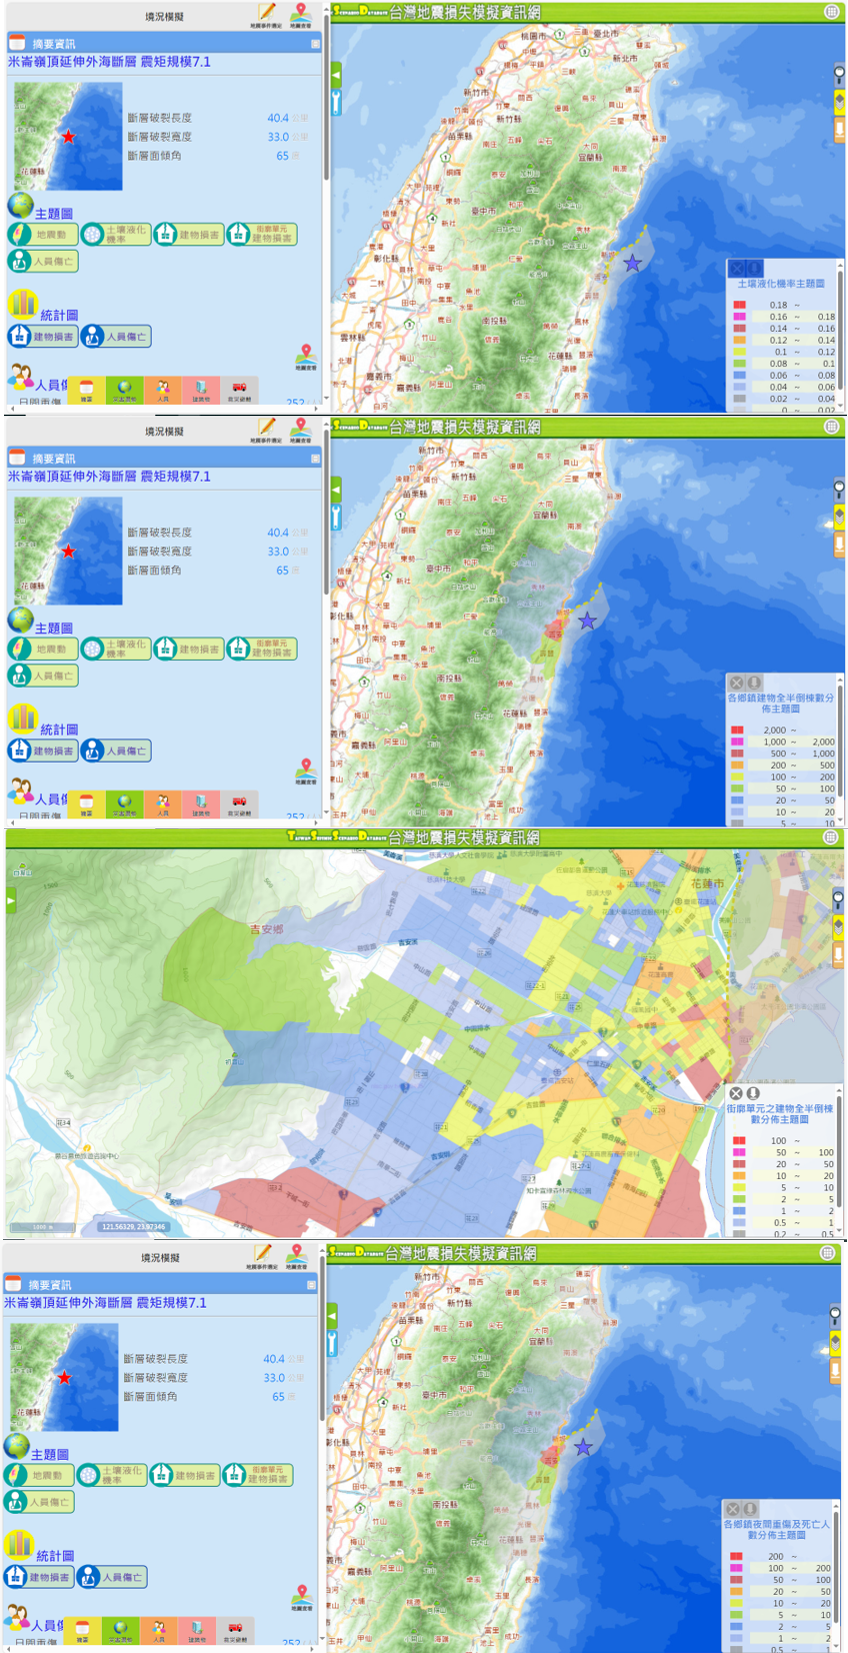 圖十、臺灣地震損失模擬資訊網-0403花蓮地震資訊